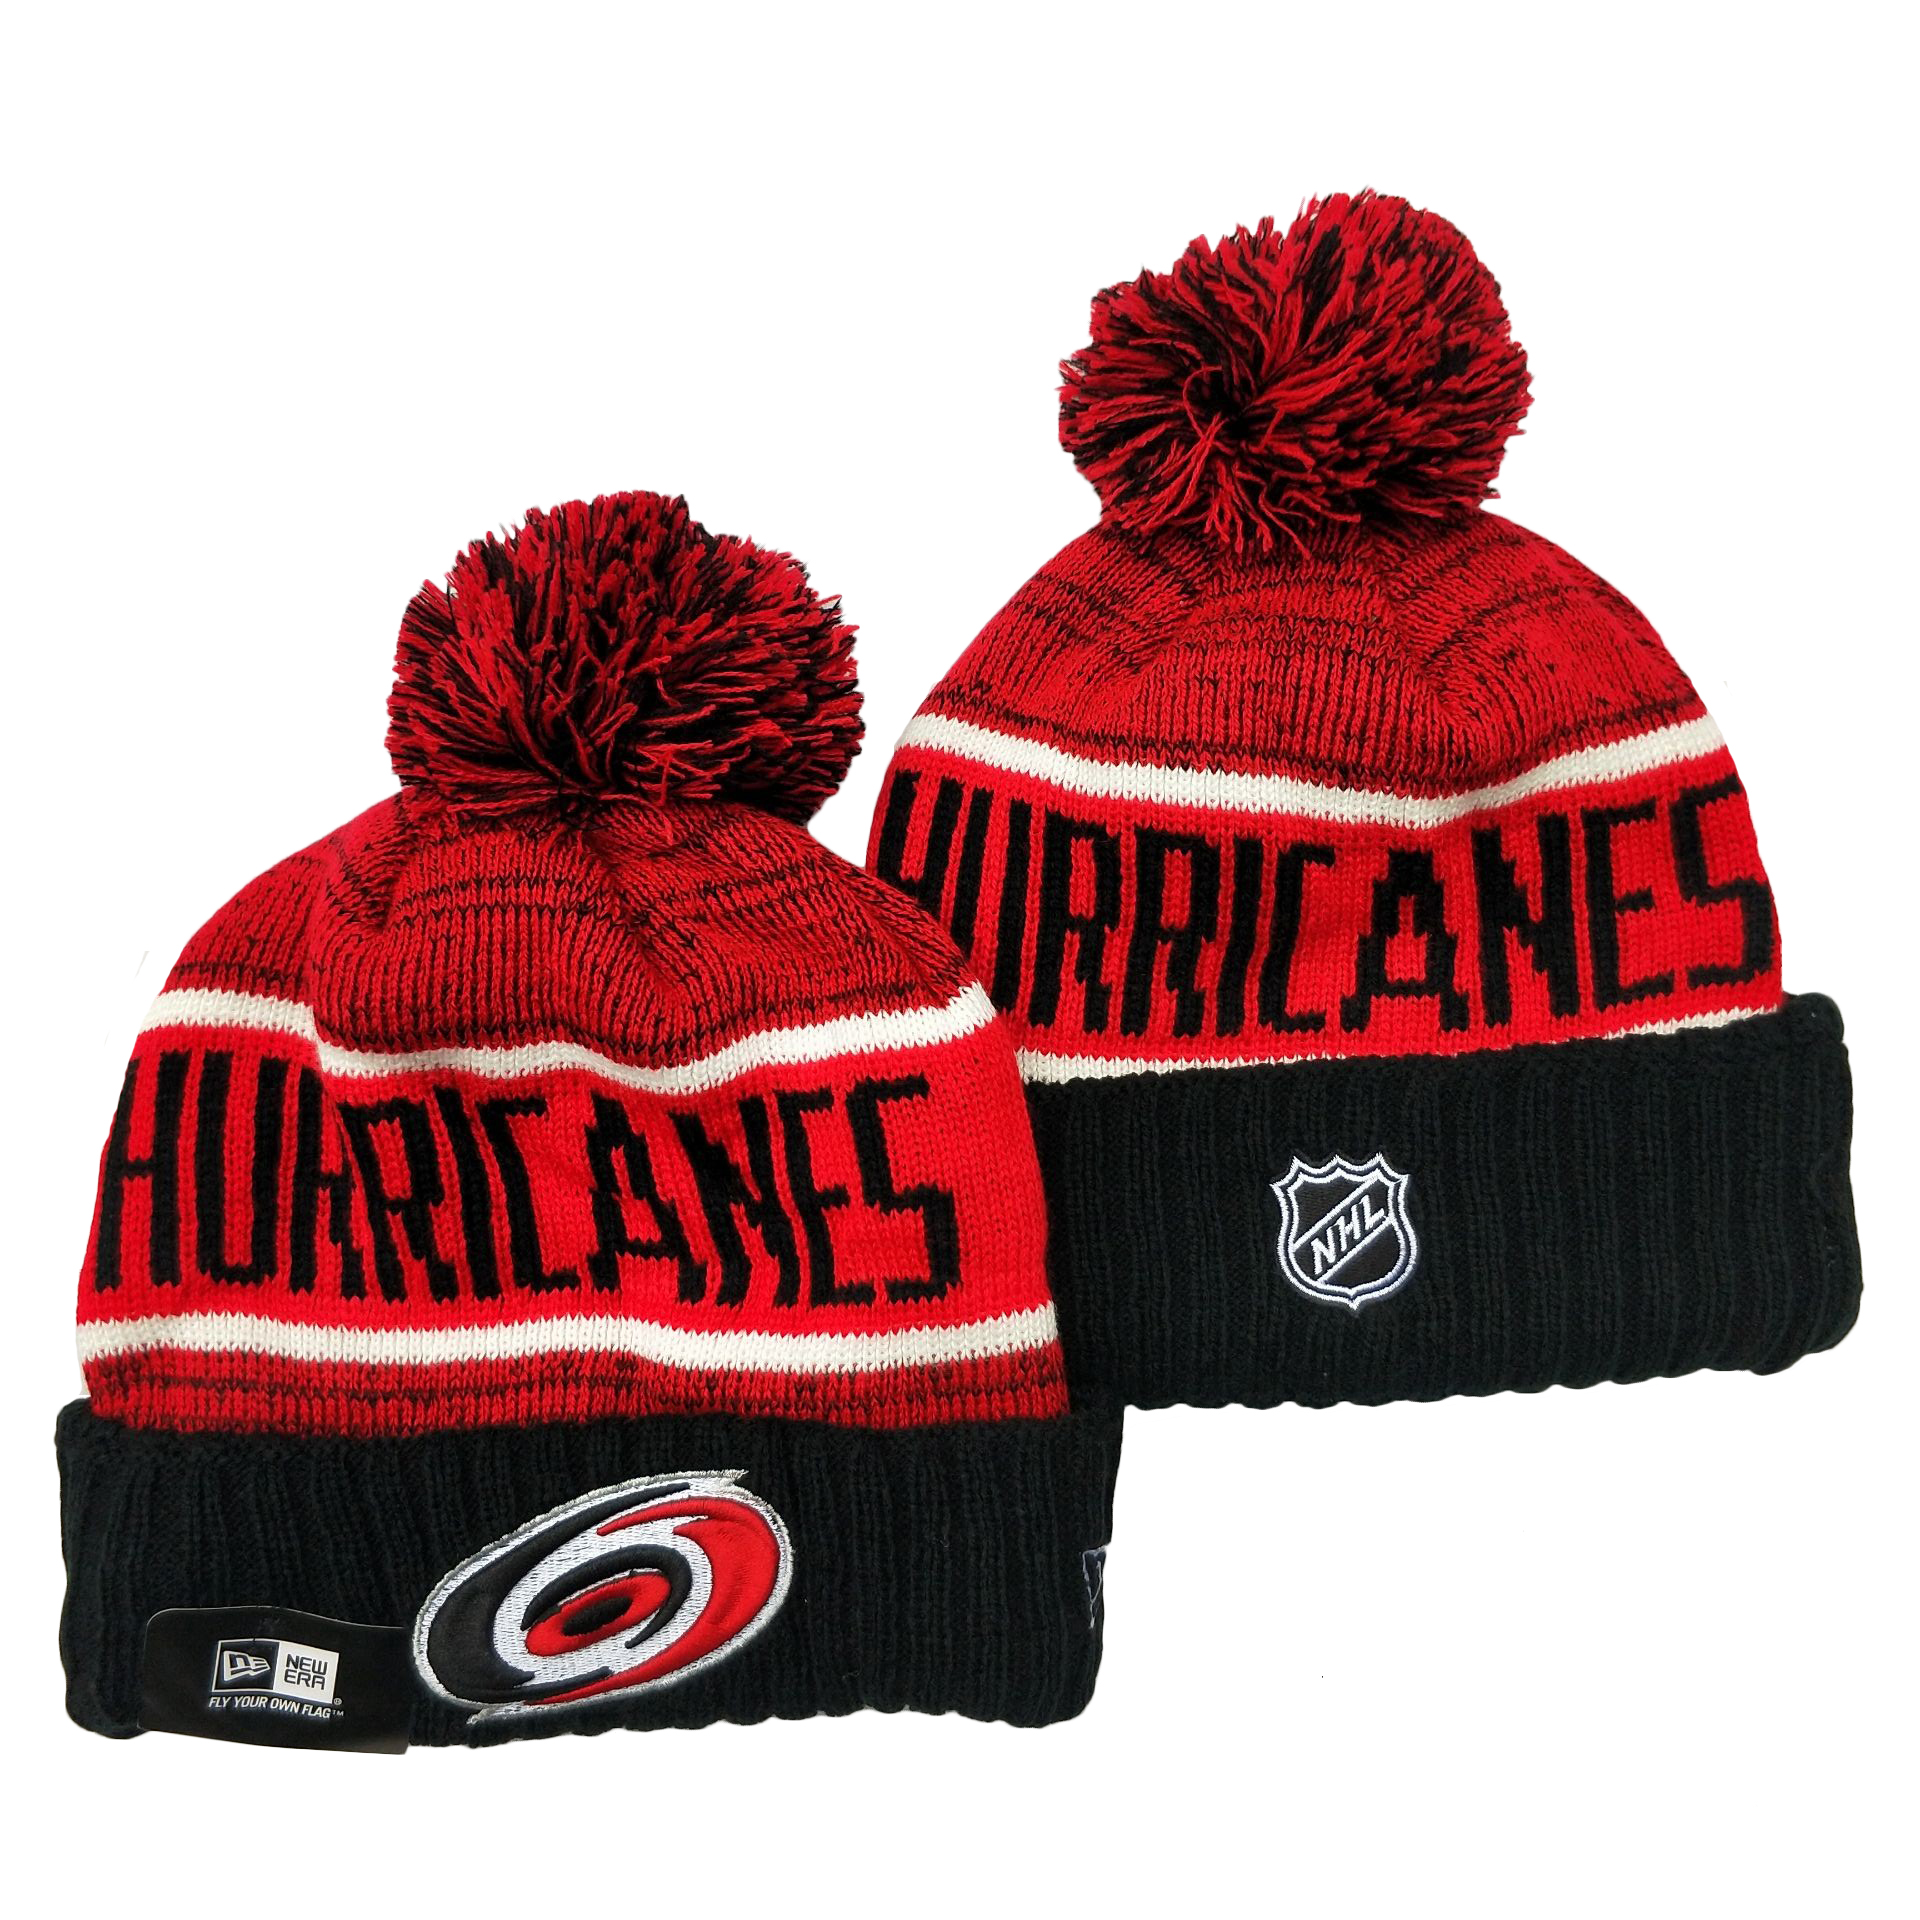 Hurricanes Team Logo Red Black Pom Cuffed Knit Hat YD